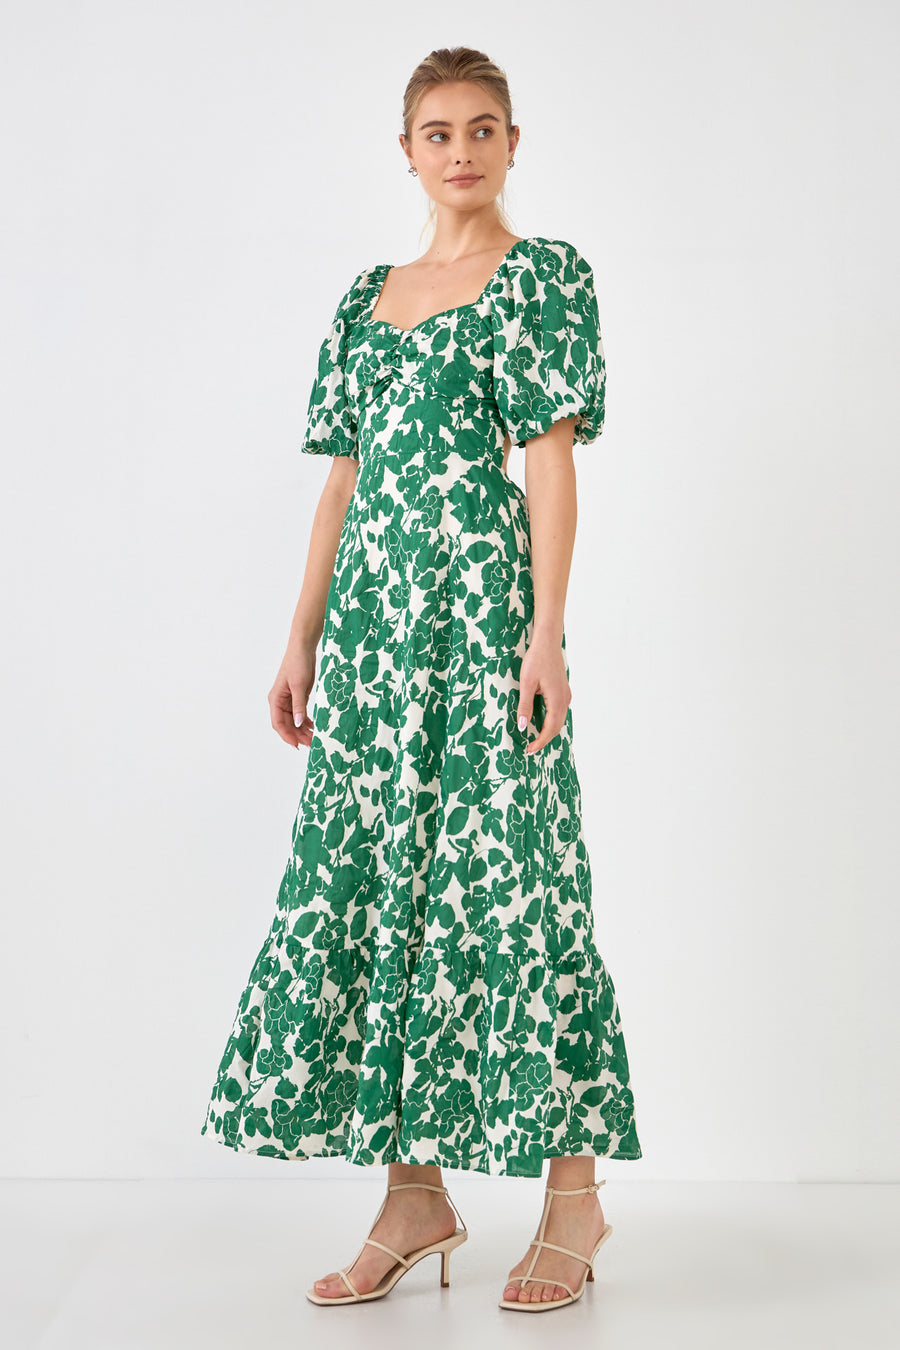 Floral Print Maxi Dress